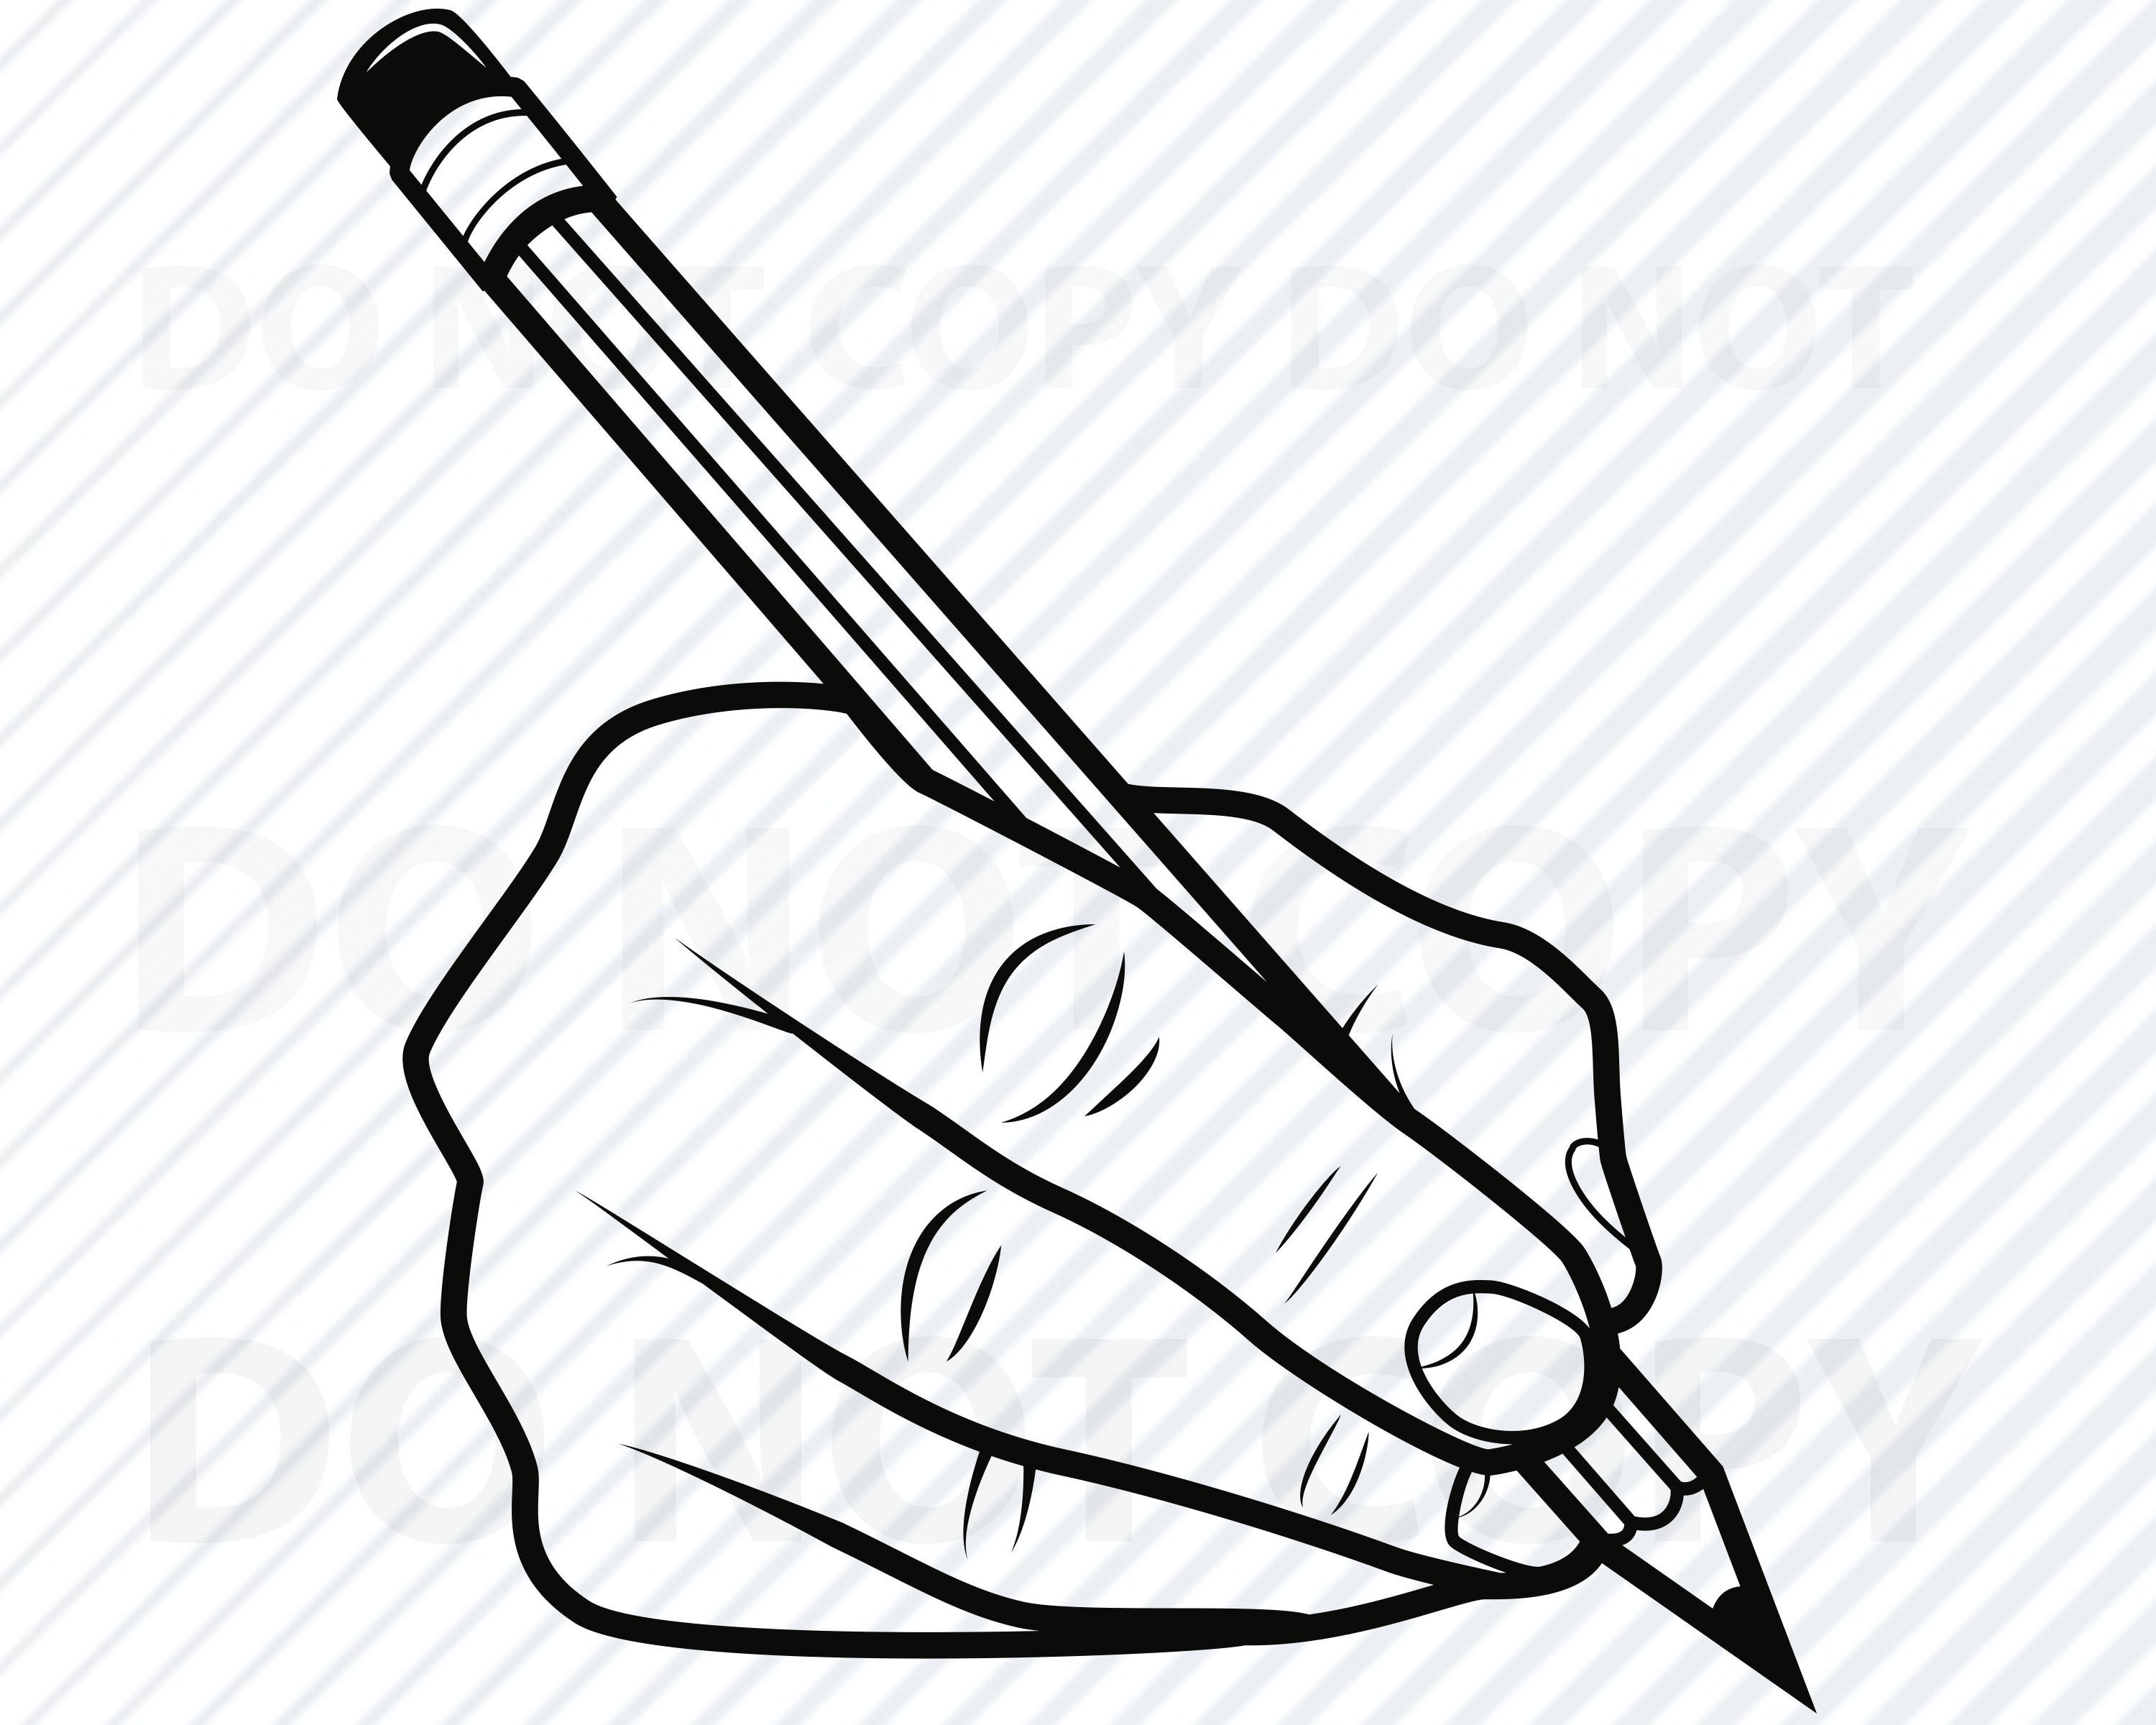 Написать drawing. Руки карандашом. Кисть для рисования карандаш силуэт. Рука с карандашом вектор. Ручка и карандаш вектор.